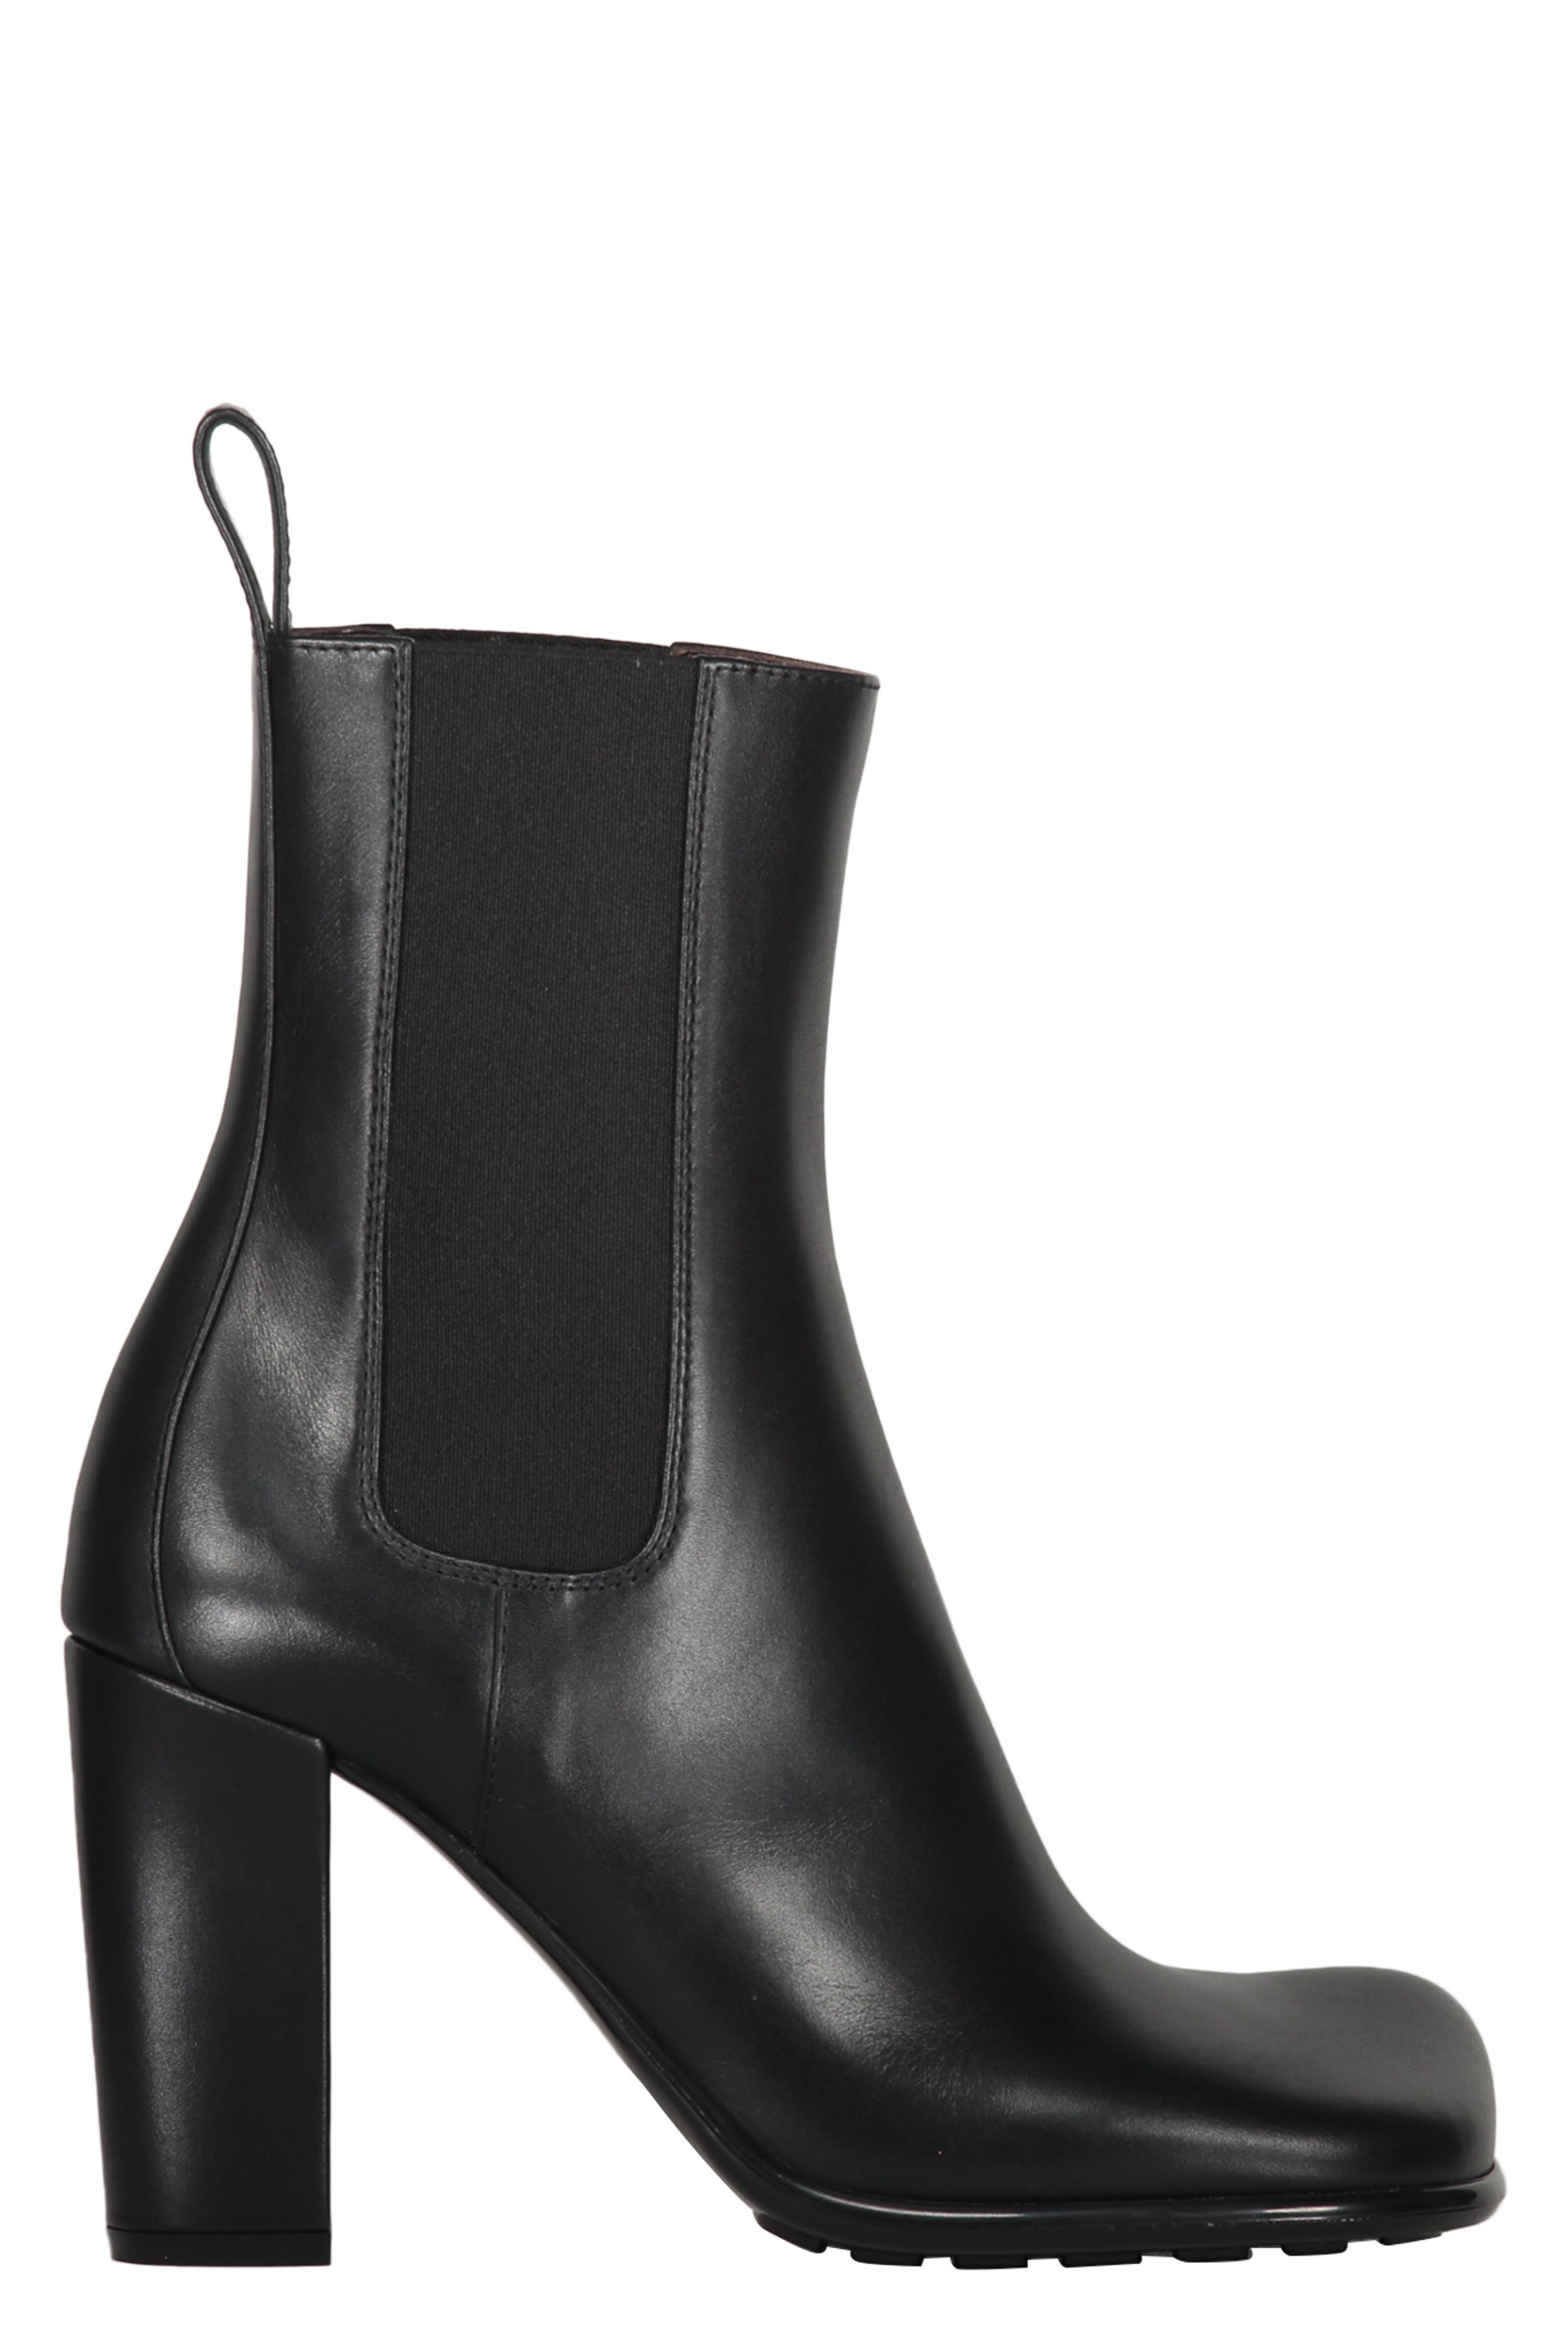 Storm Leather ankle boots-Bottega Veneta-OUTLET-SALE-36-ARCHIVIST